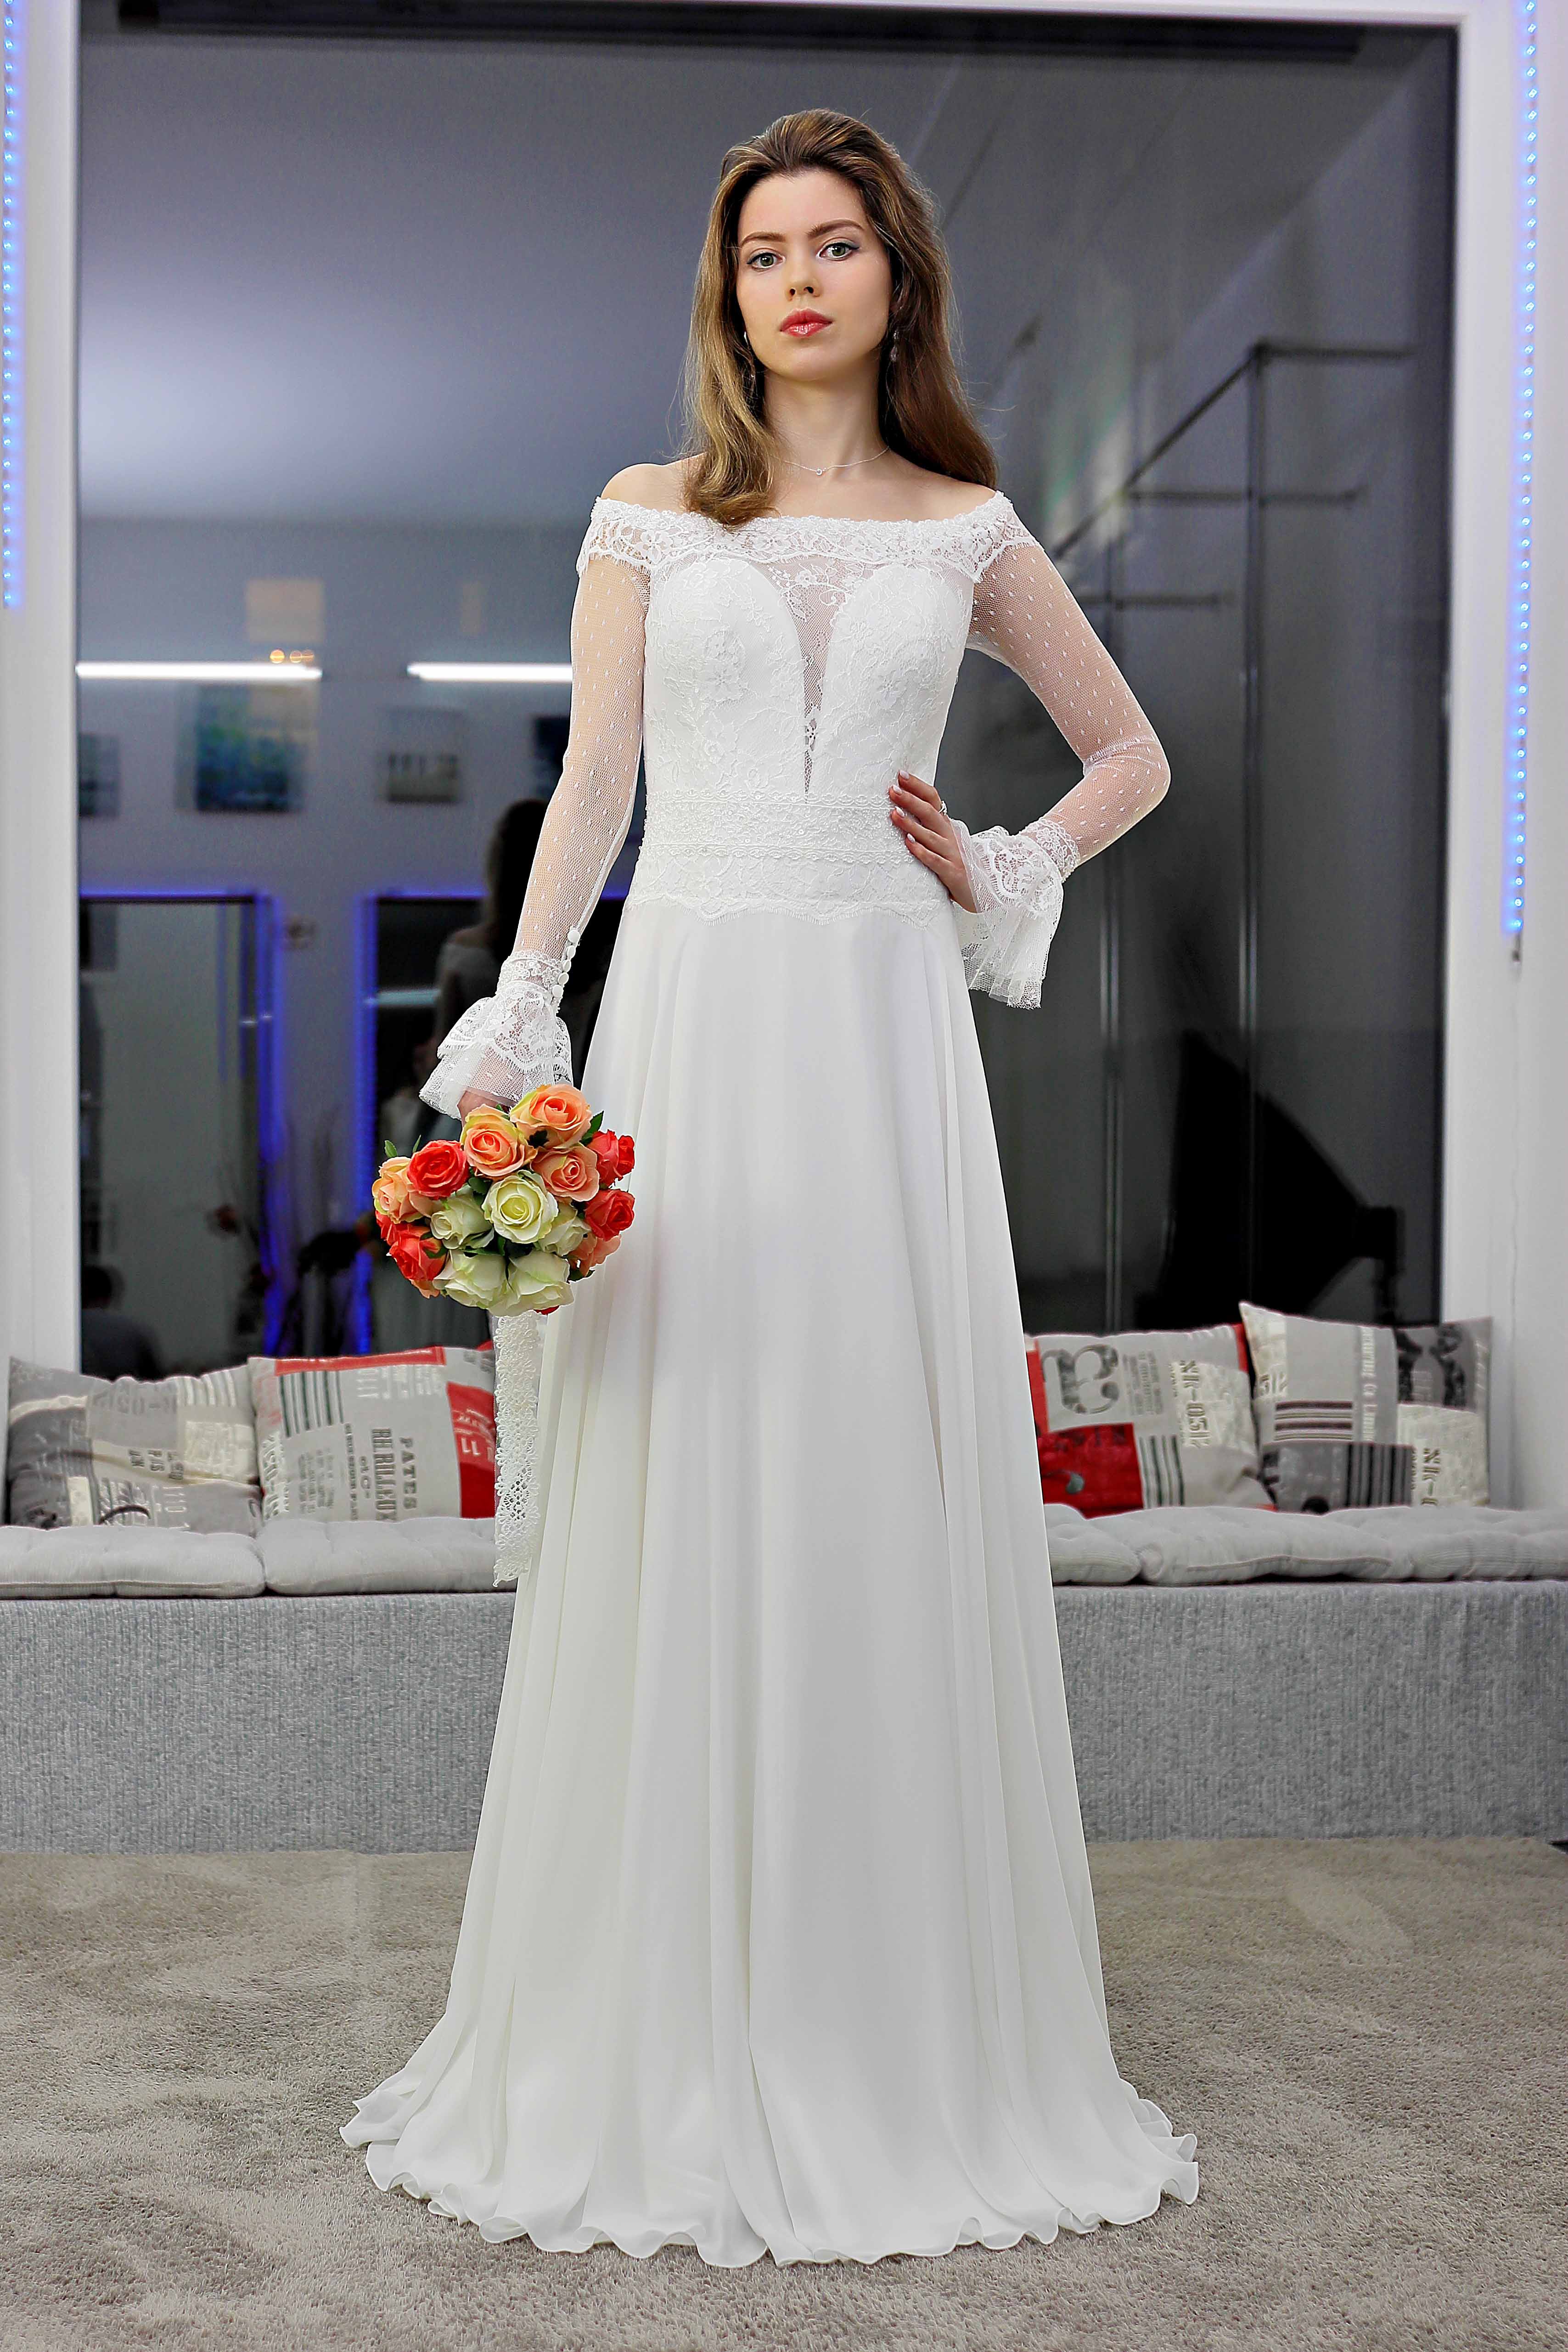 Schantal Brautkleid aus der Kollektion „Traum“, Modell 14005.